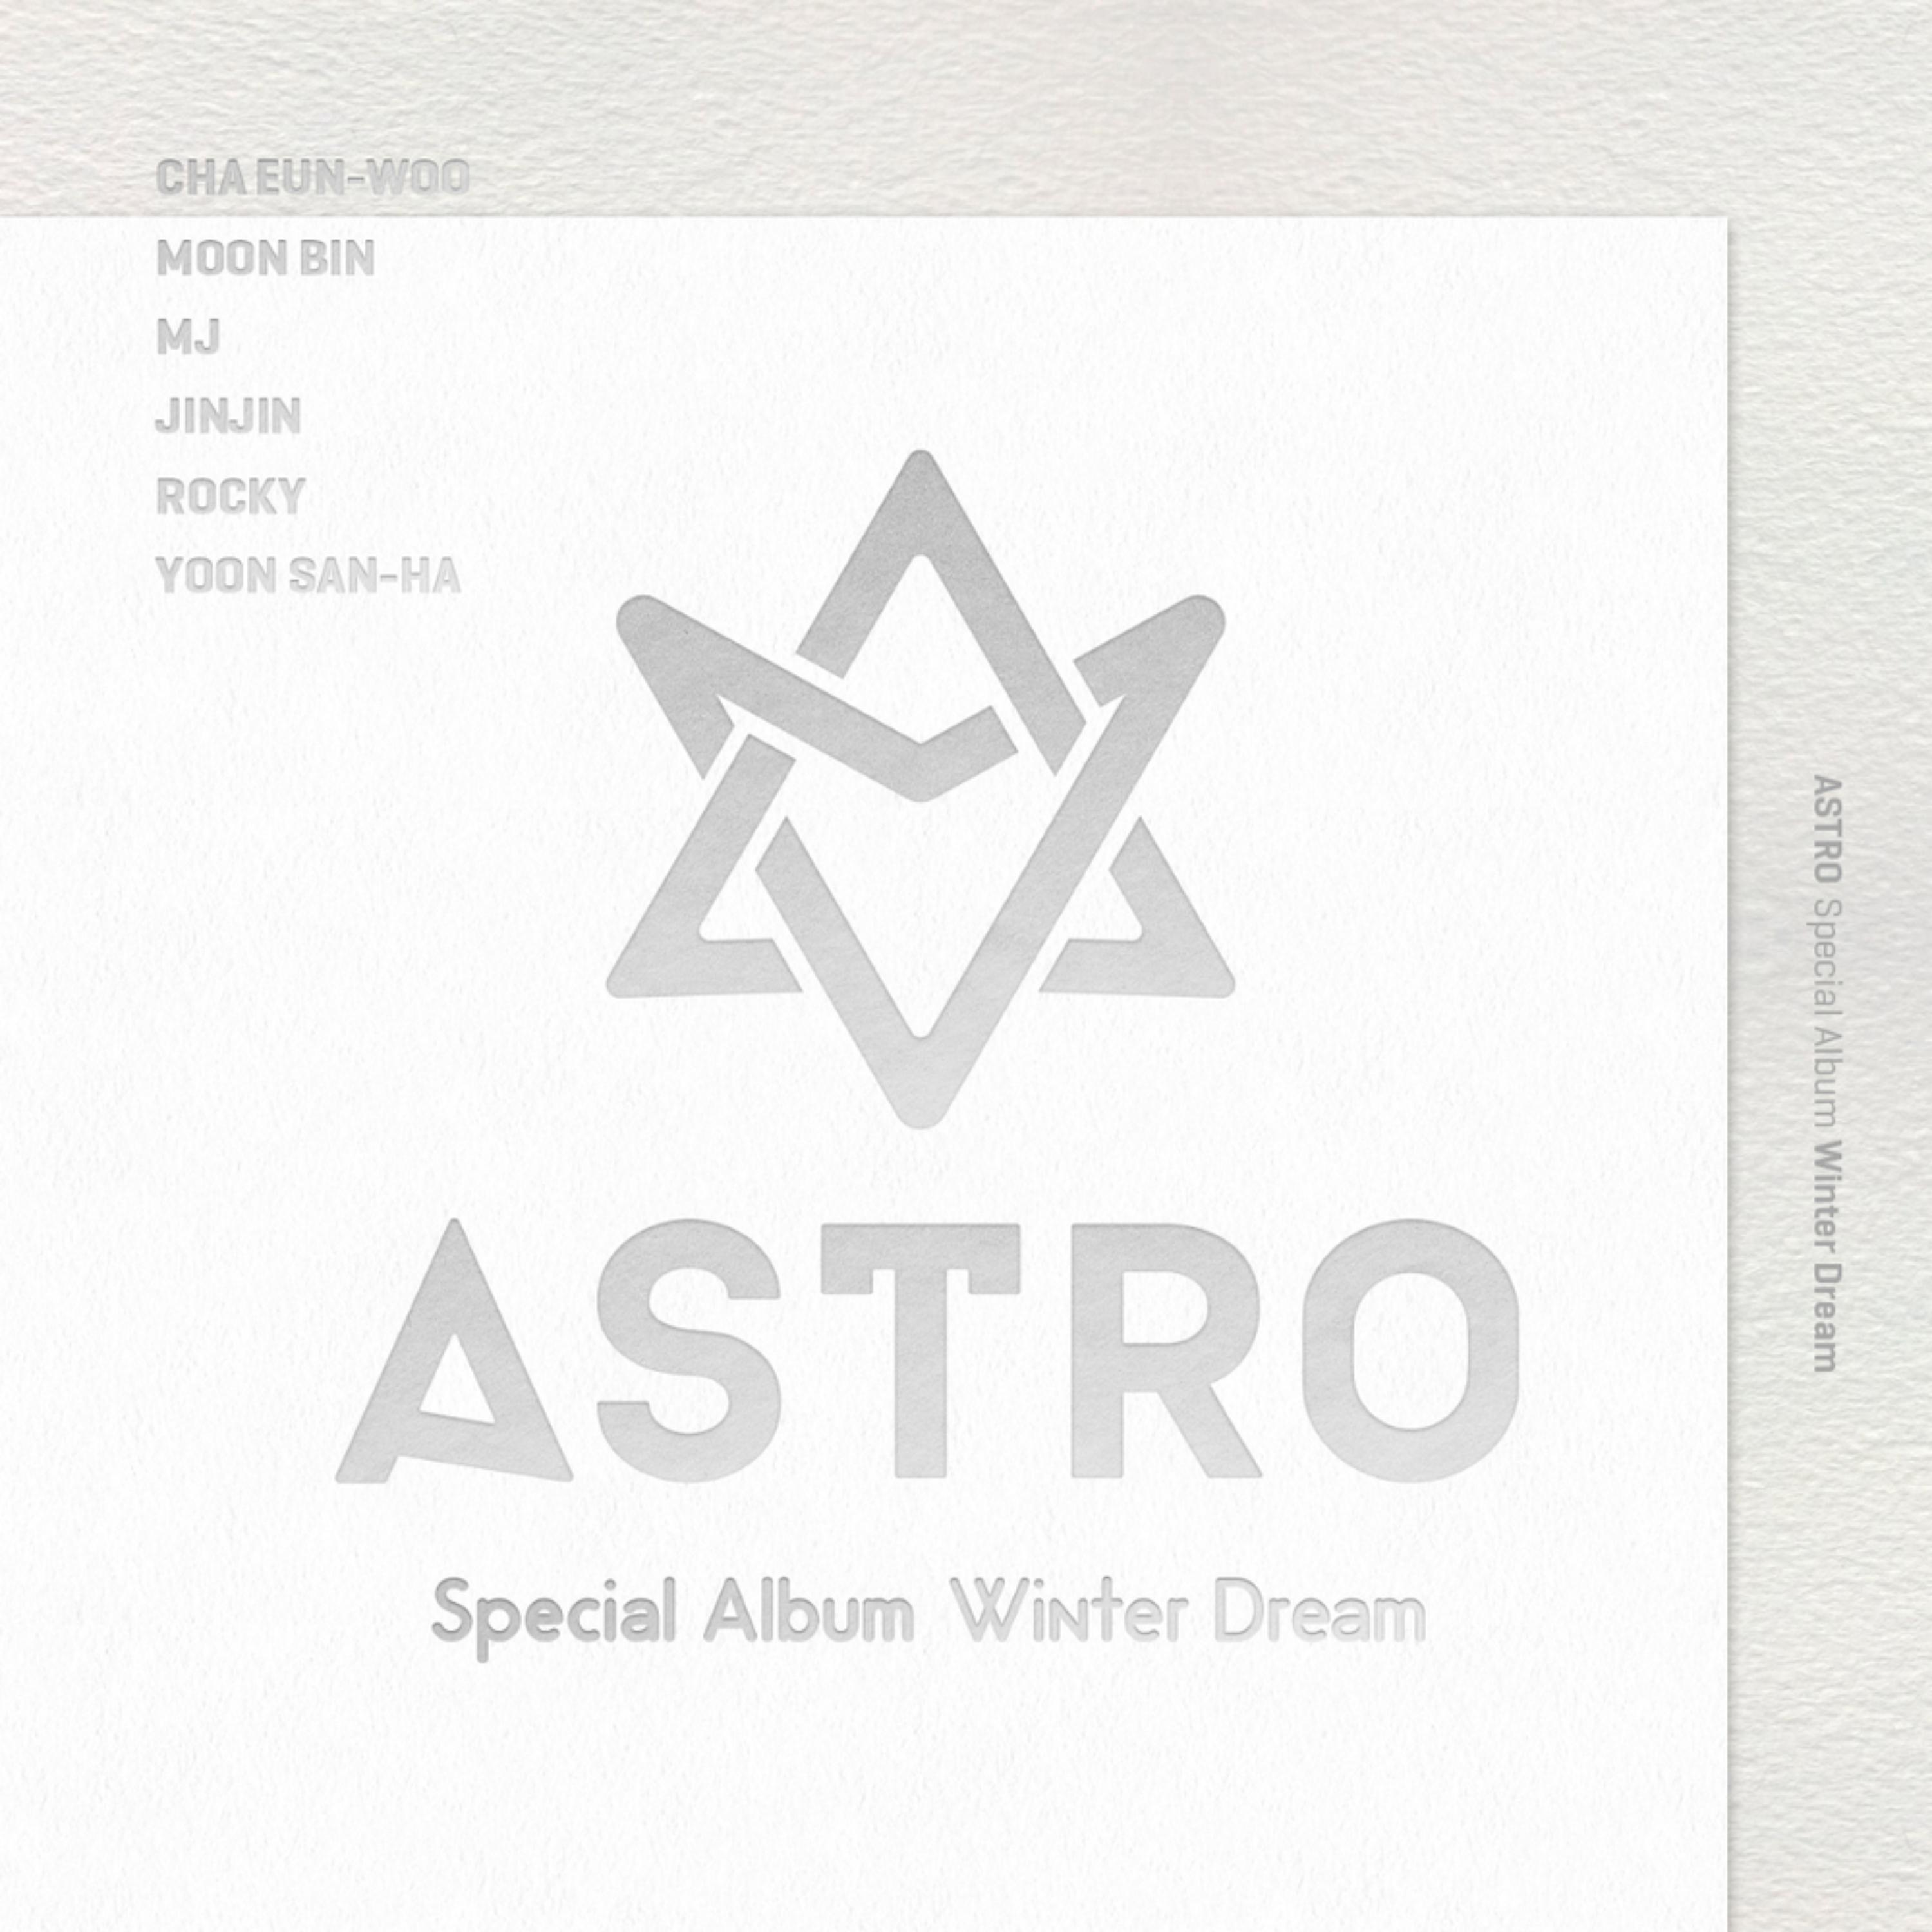 붙잡았어야 해歌词 歌手ASTRO-专辑Winter Dream-单曲《붙잡았어야 해》LRC歌词下载